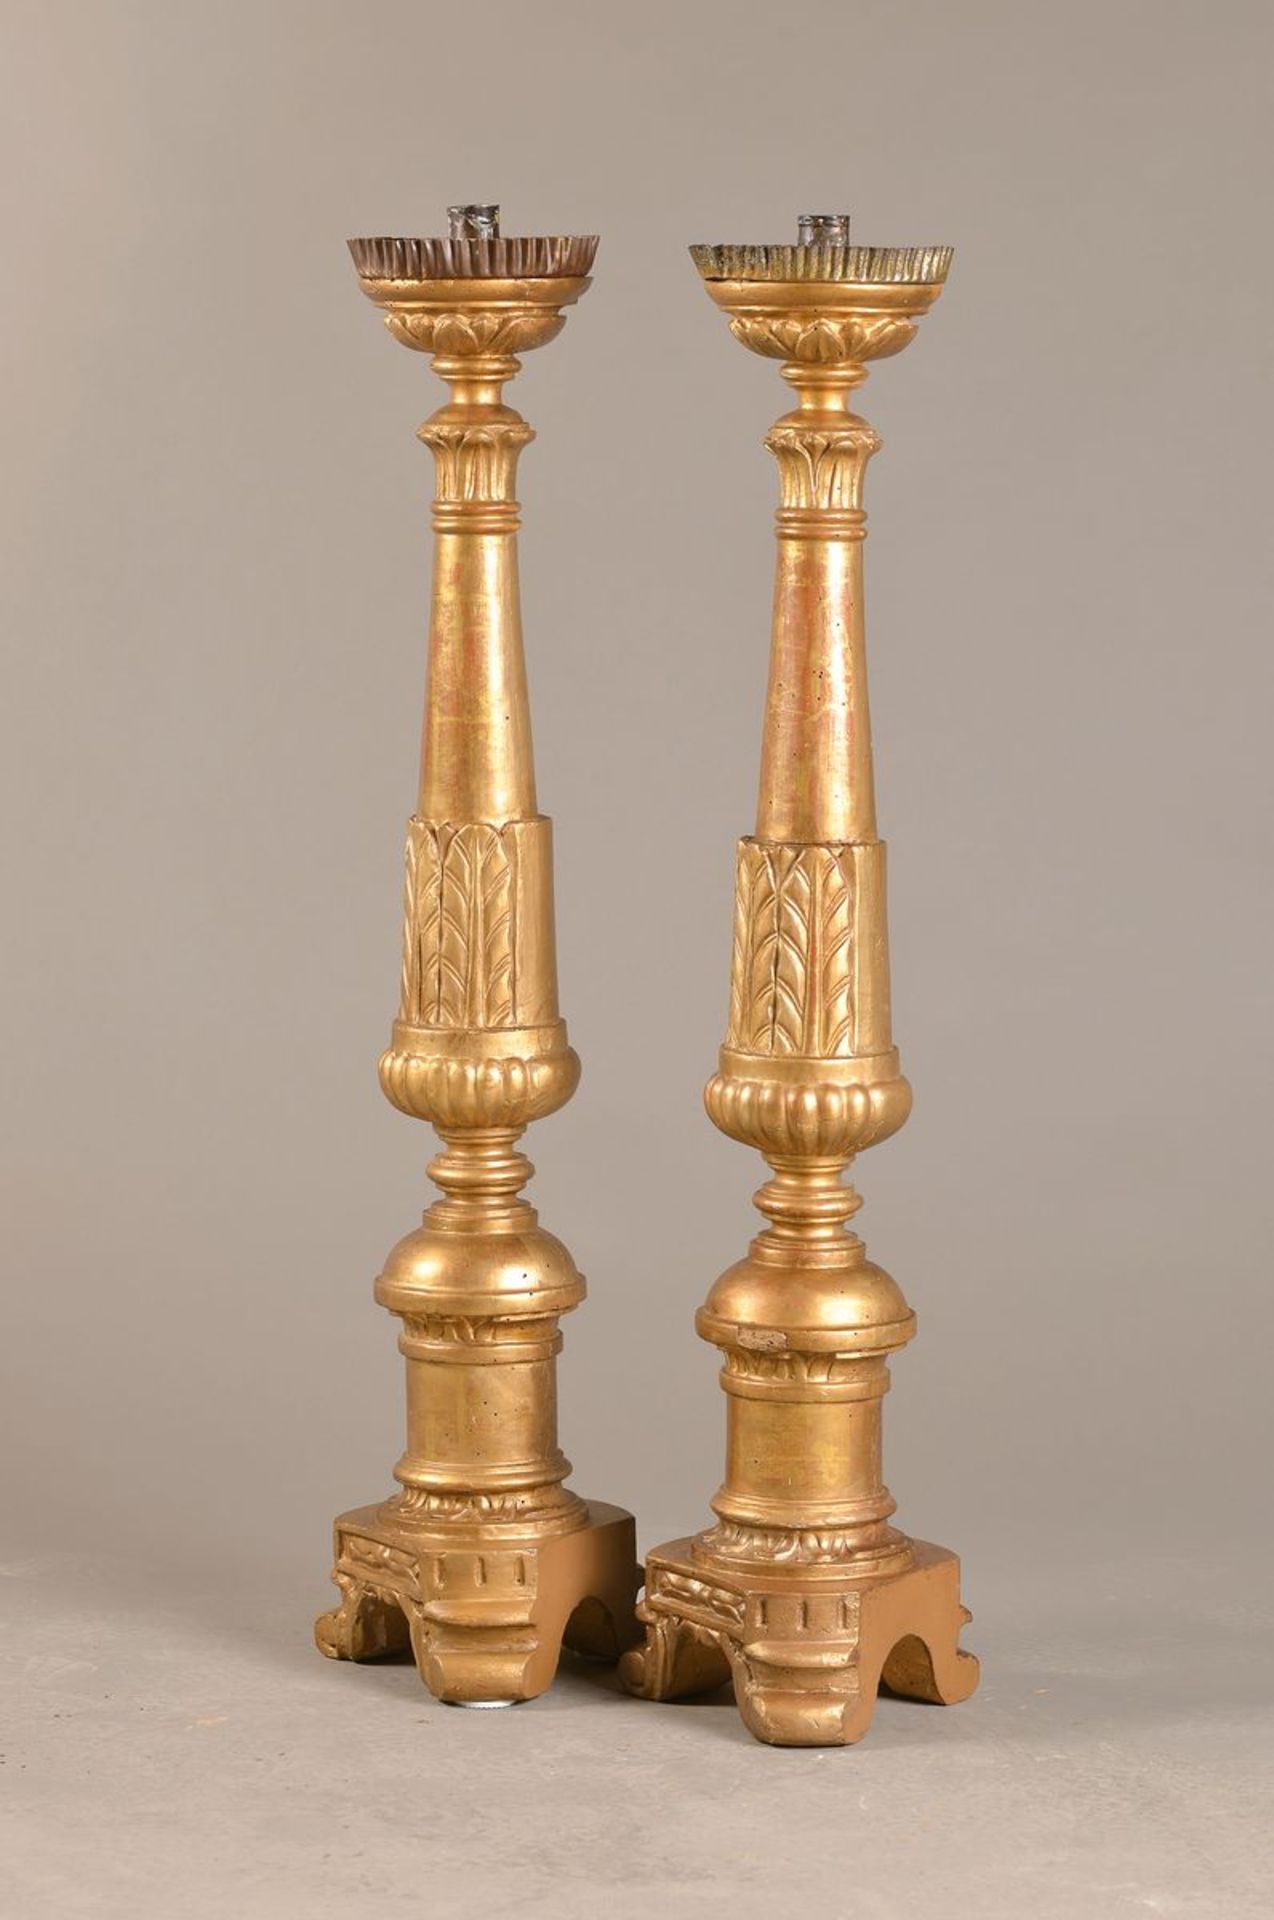 Paar große Kerzenleuchter, 18./19. Jh., goldfarbene Fassung später, Tropfschalen, ca. 89 cm,